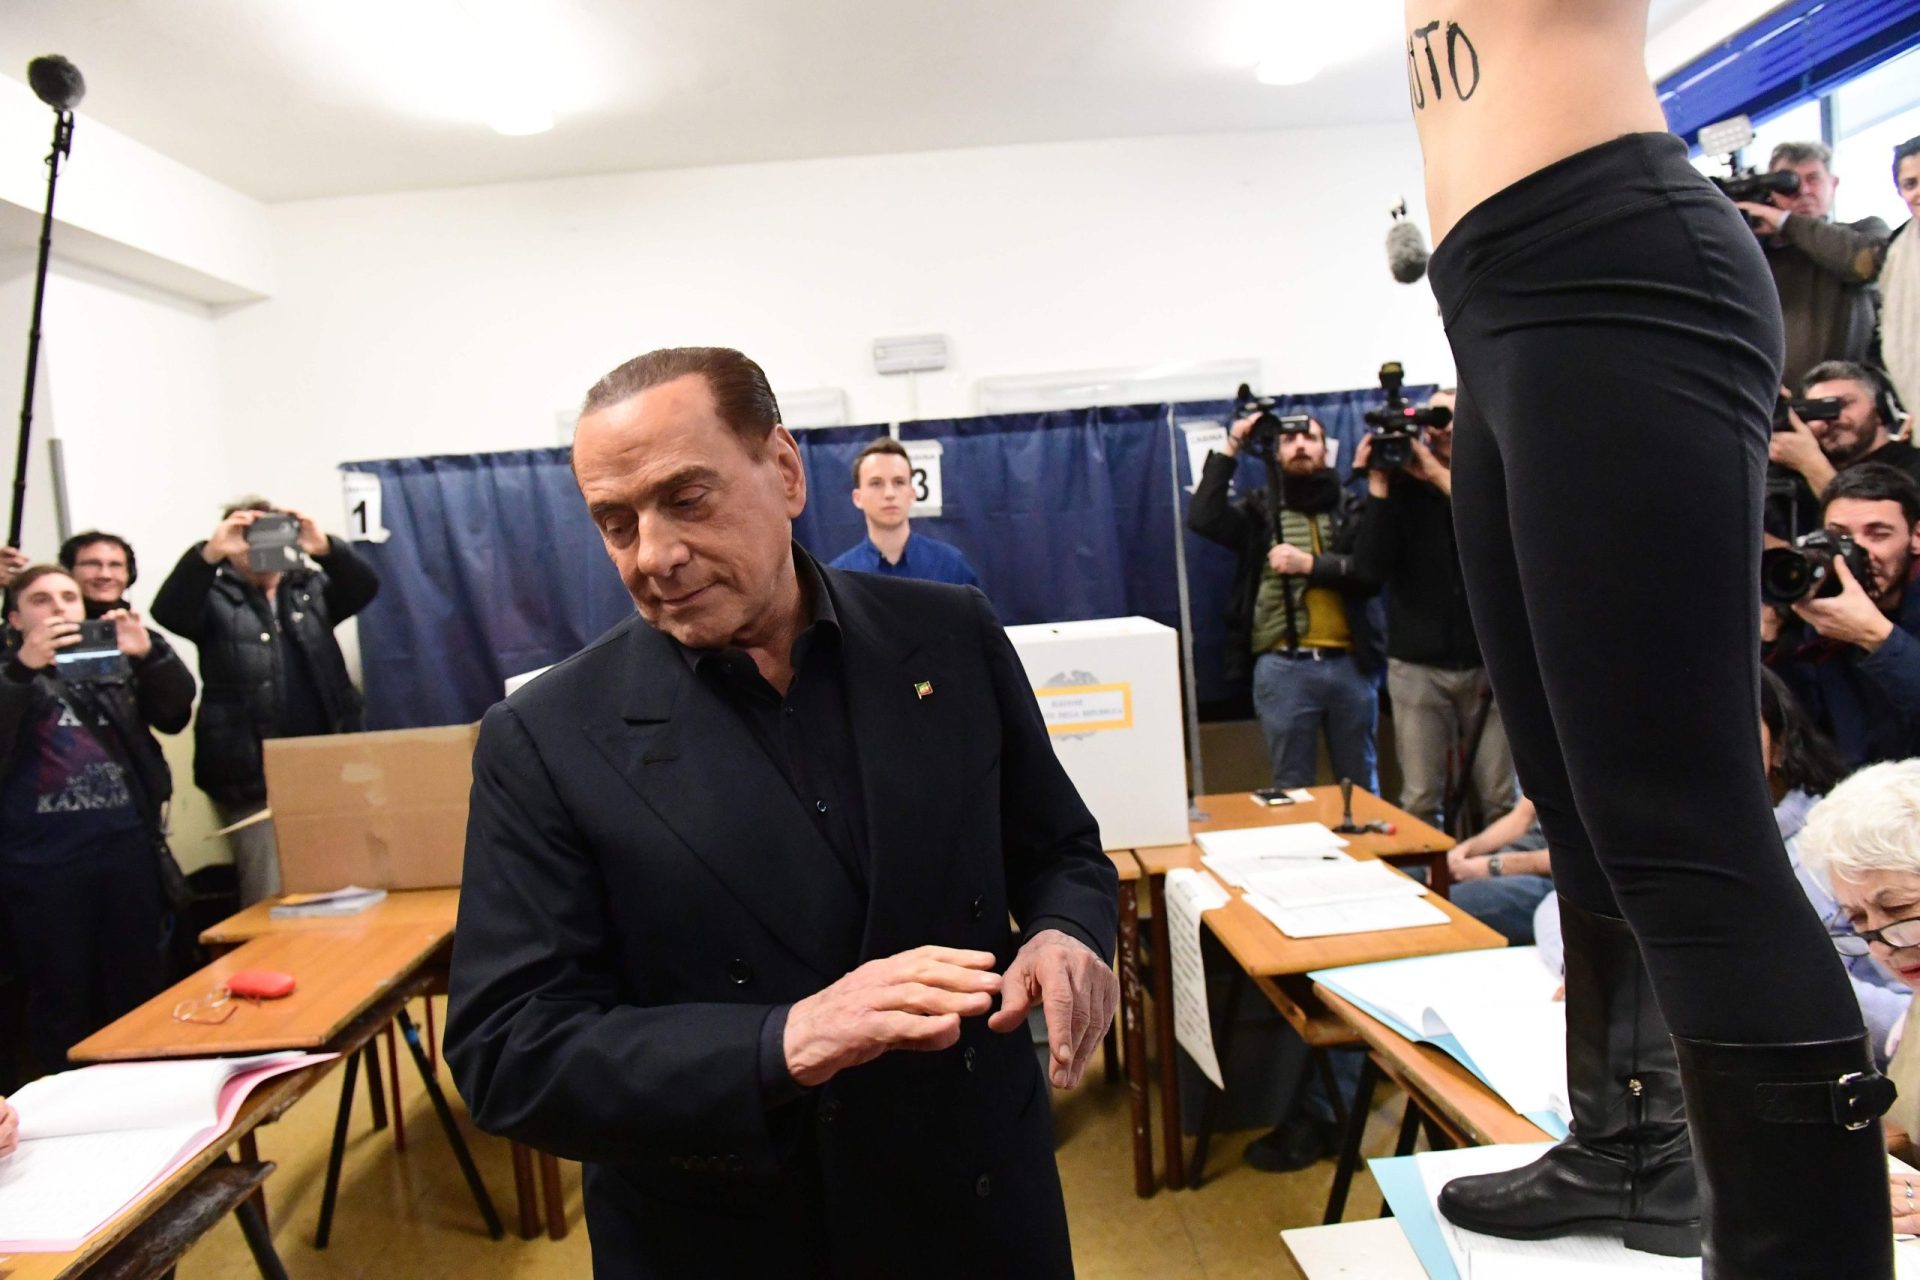 Itália. Berlusconi surpreendido por mulher seminua na altura em que ia votar | VÍDEO